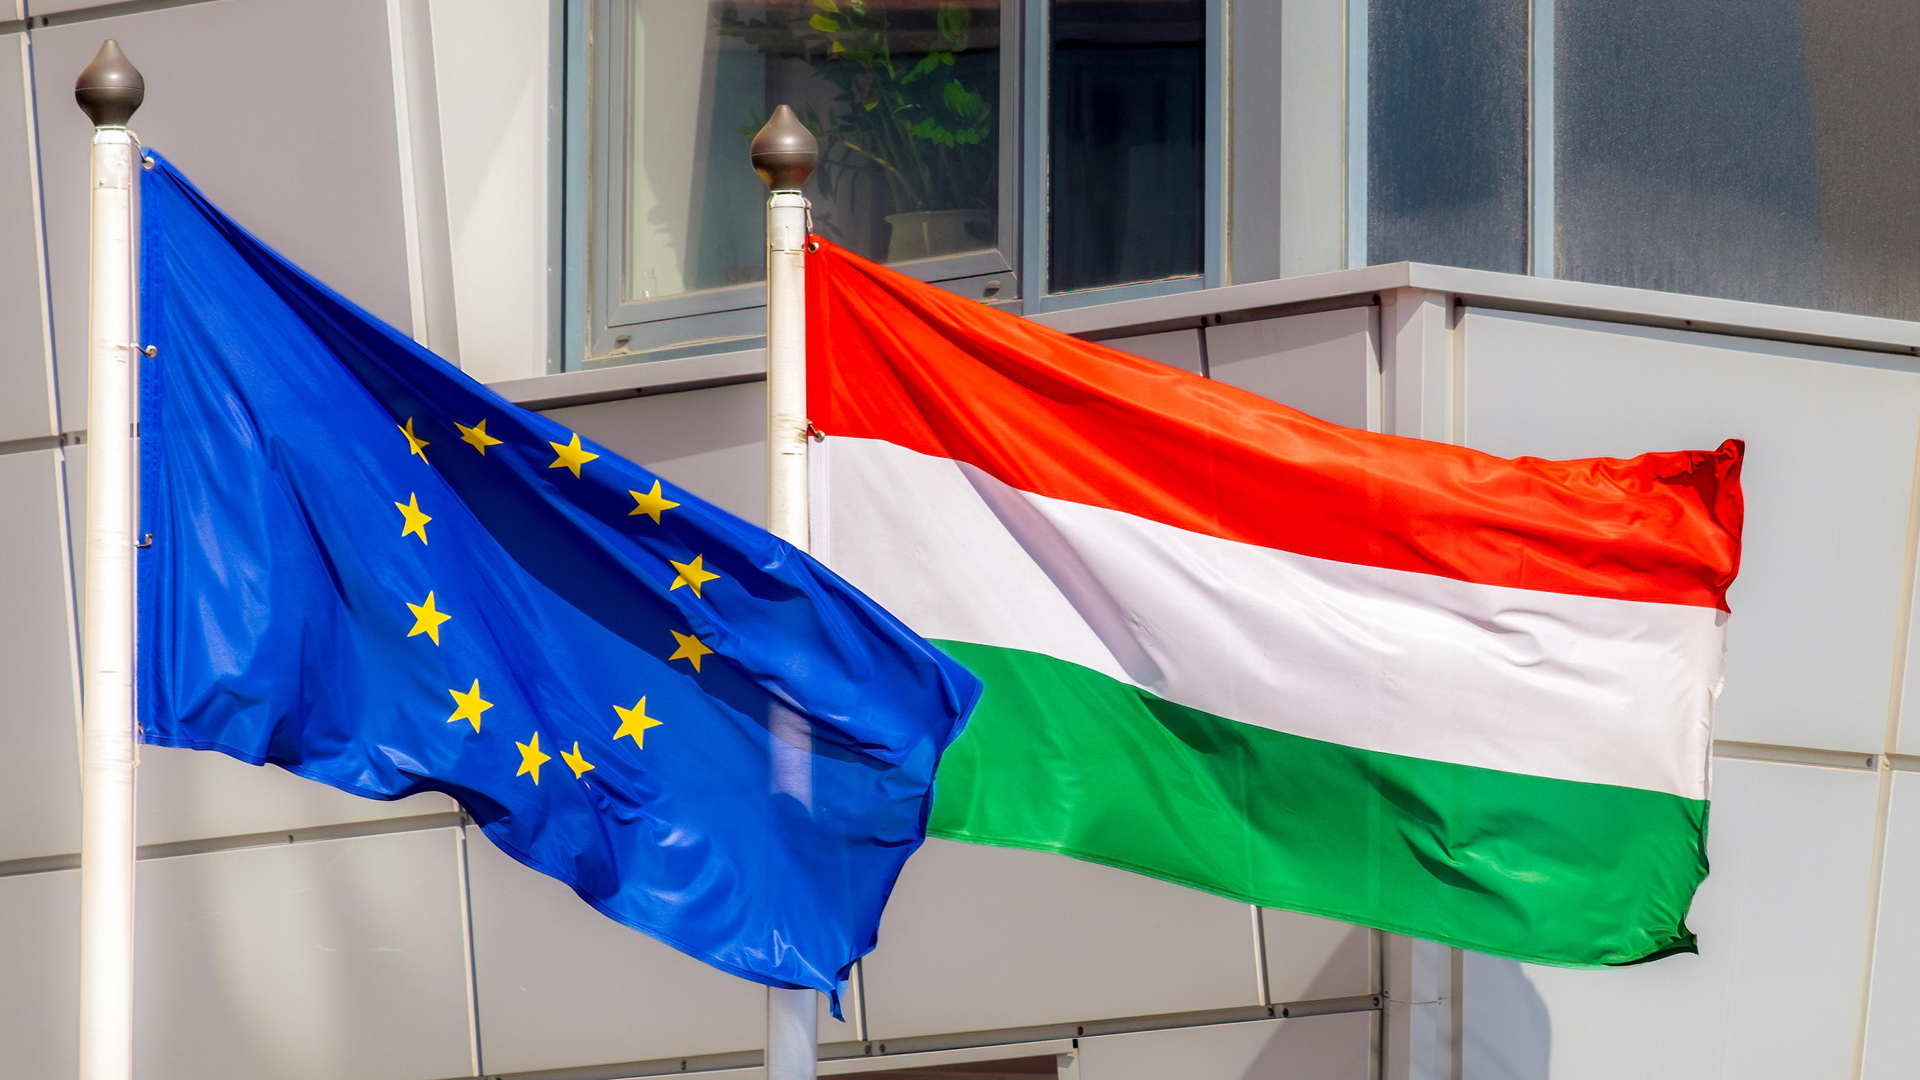 Flaggen der EU und von Ungarn | picture alliance / Zoonar